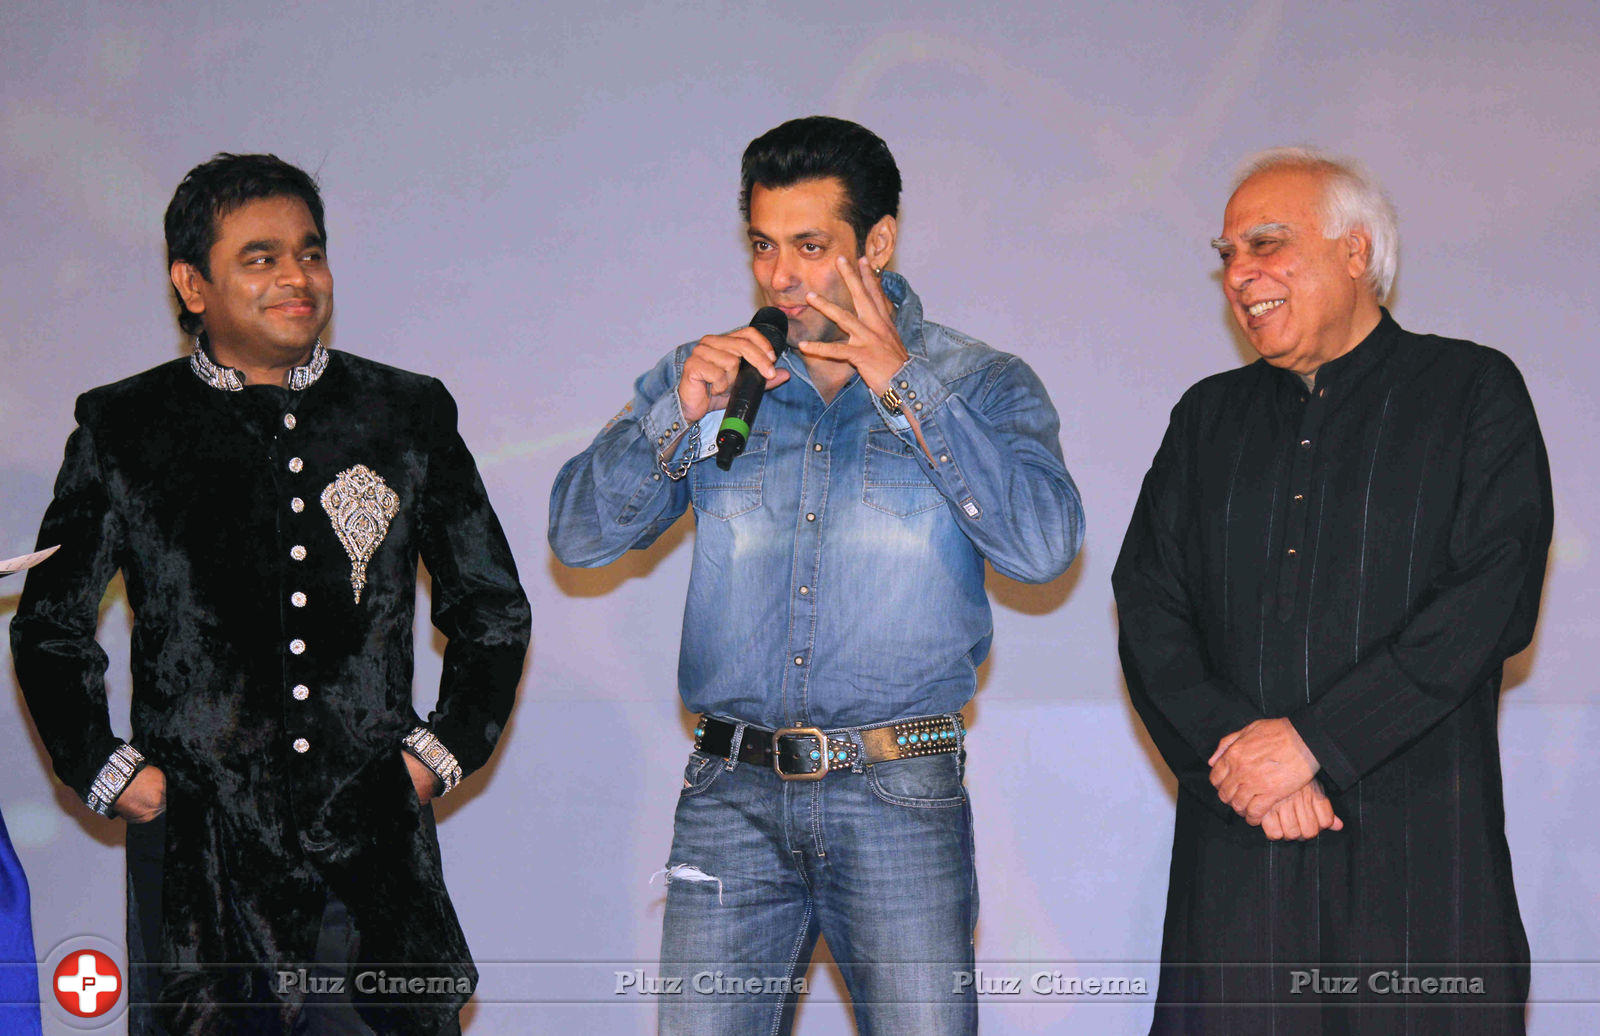 Salman Khan launches A.R. Rahman and Kapil Sibal album Raunaq Photos | Picture 720019